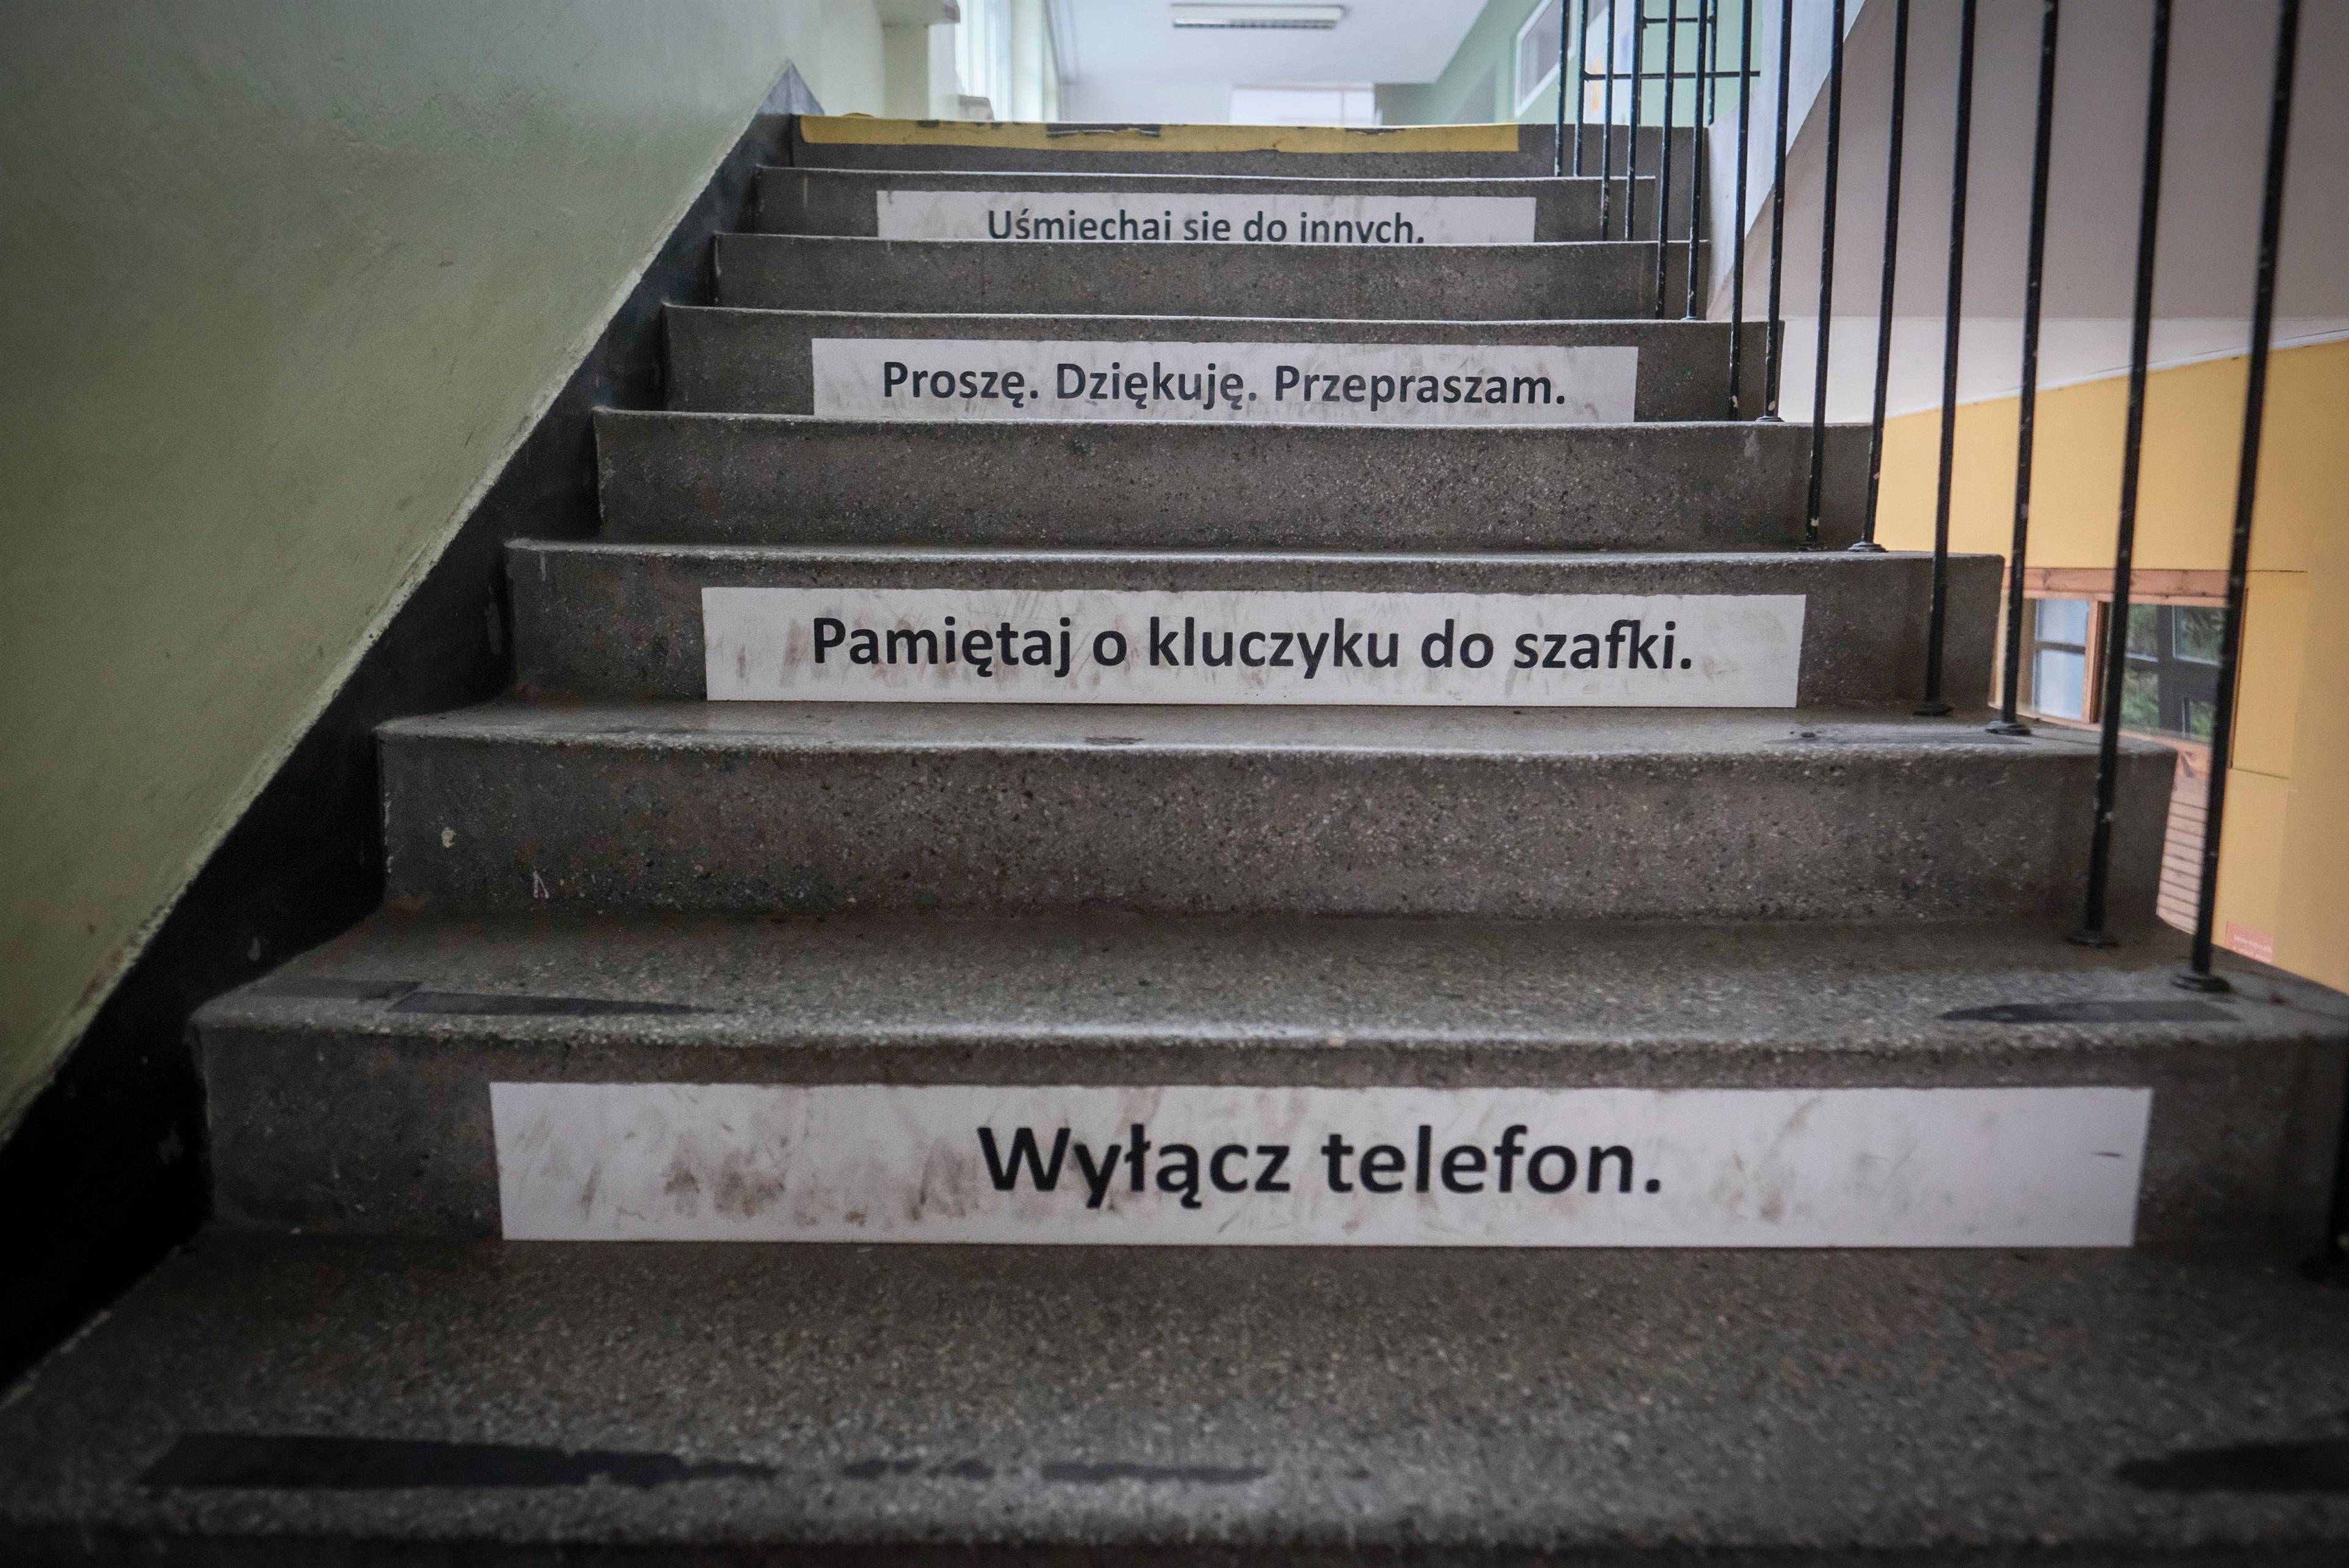 schody z wypisanymi hasłami, m.in. „wyłącz telefon"